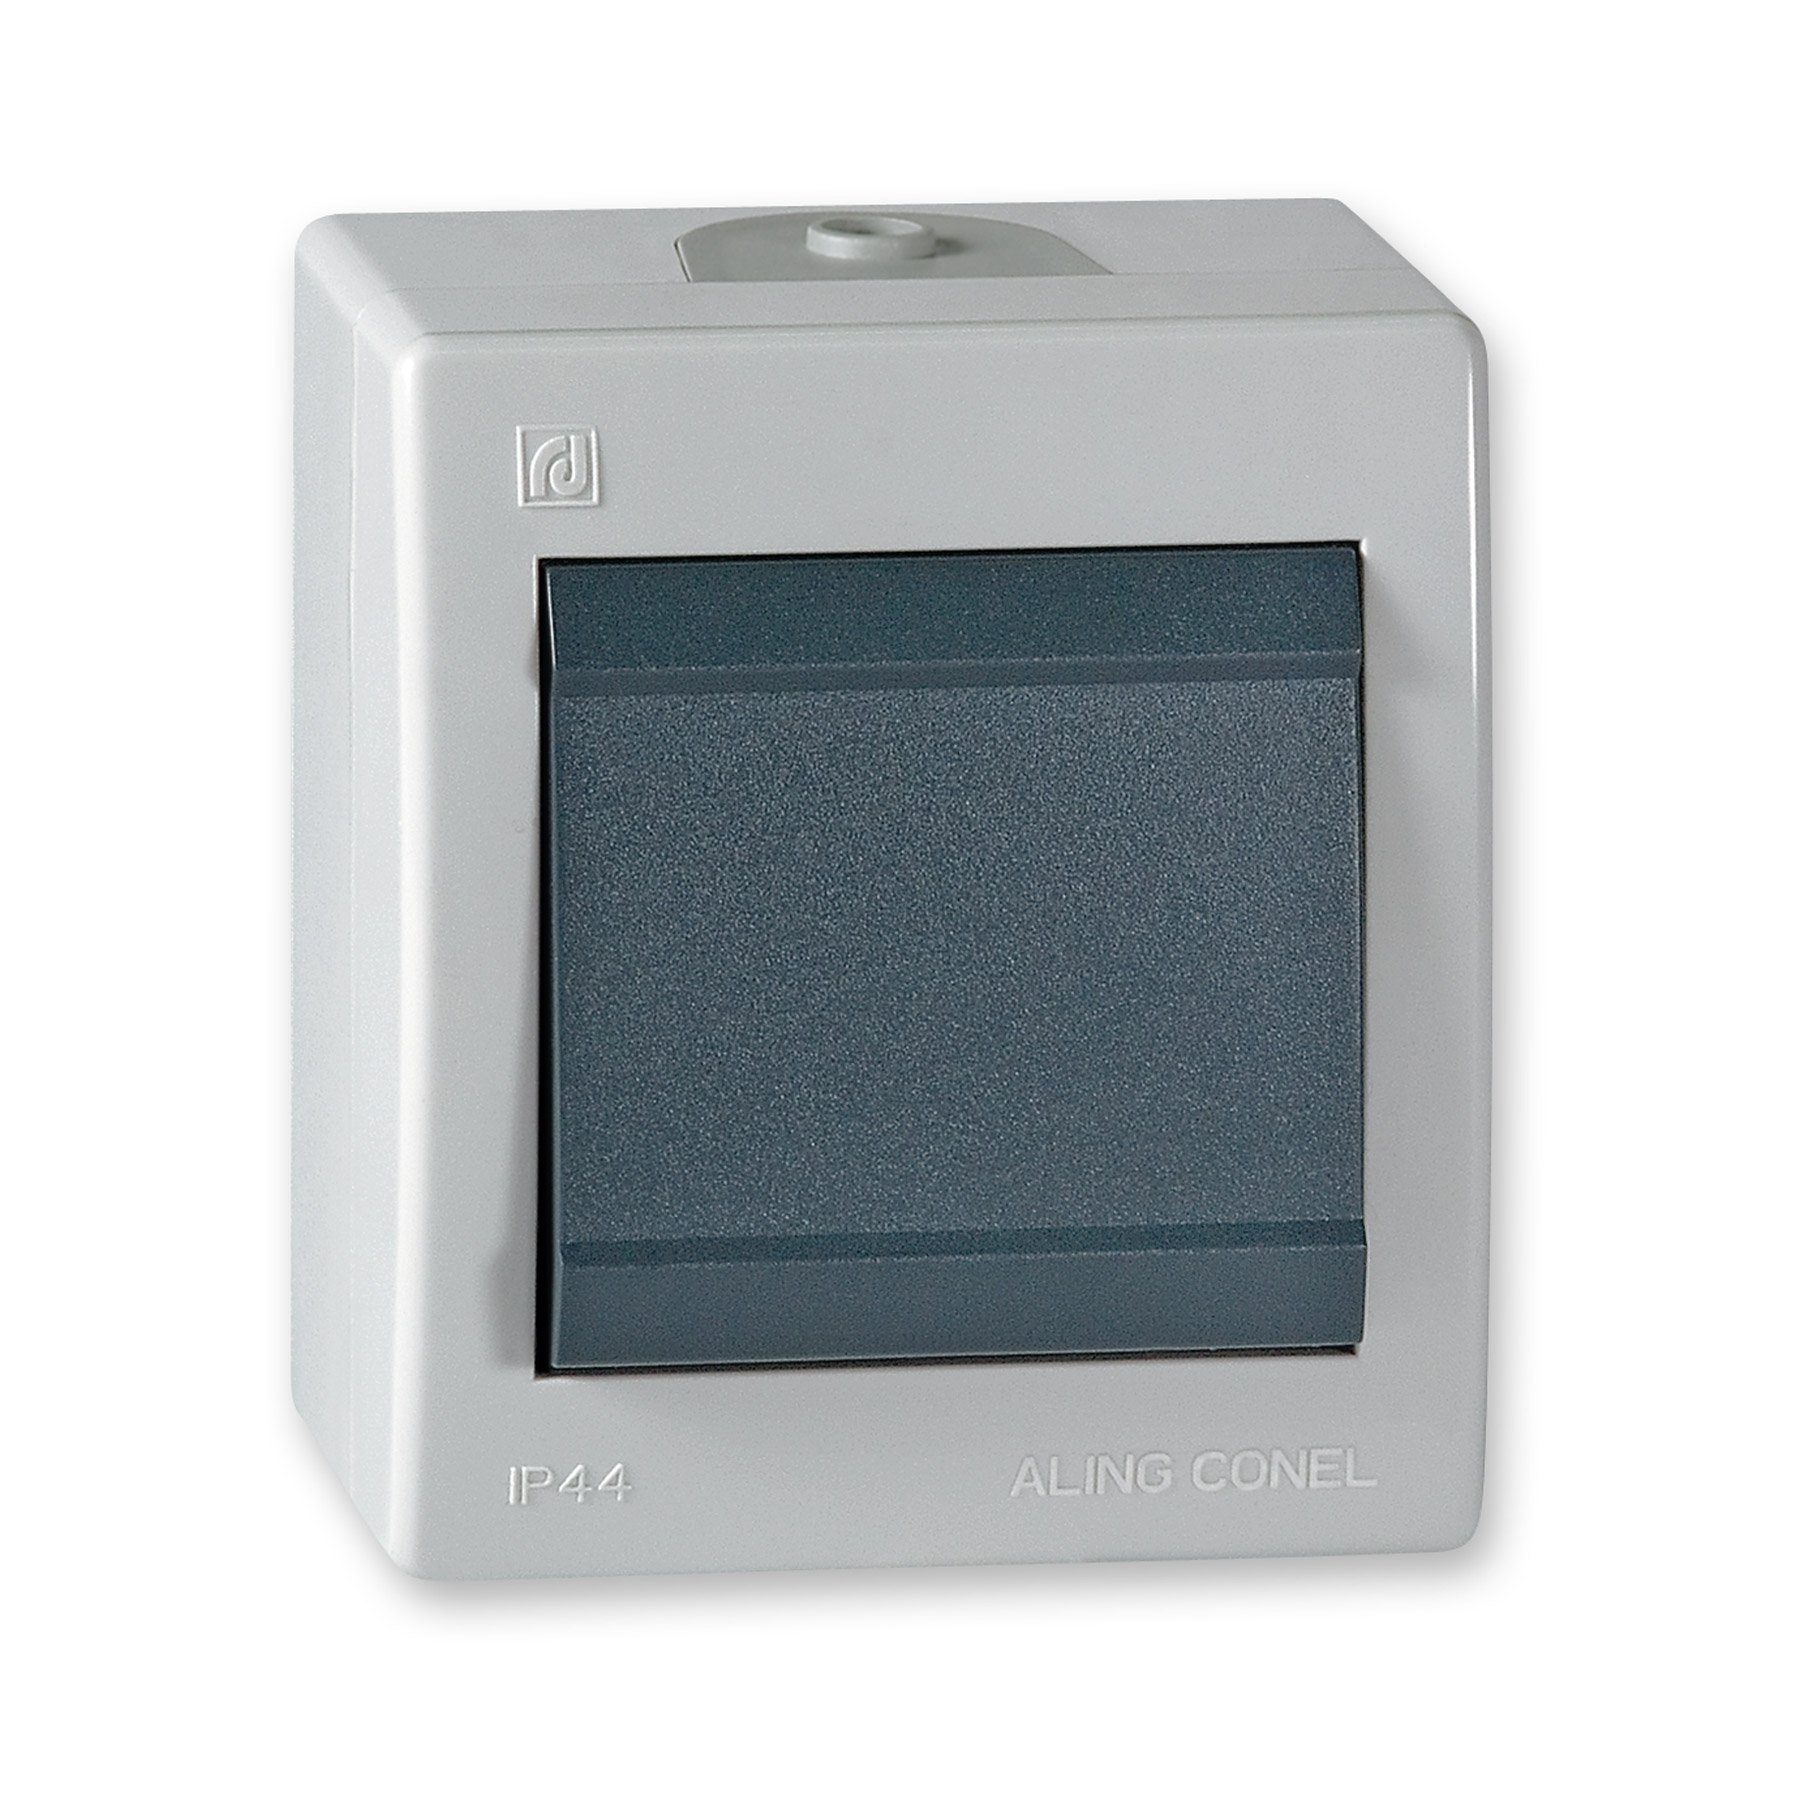 Aling Conel Lichtschalter Power Line Aufputz-Schalter ohne Glimmlampe (Packung), IP 44 grau | Lichtschalter